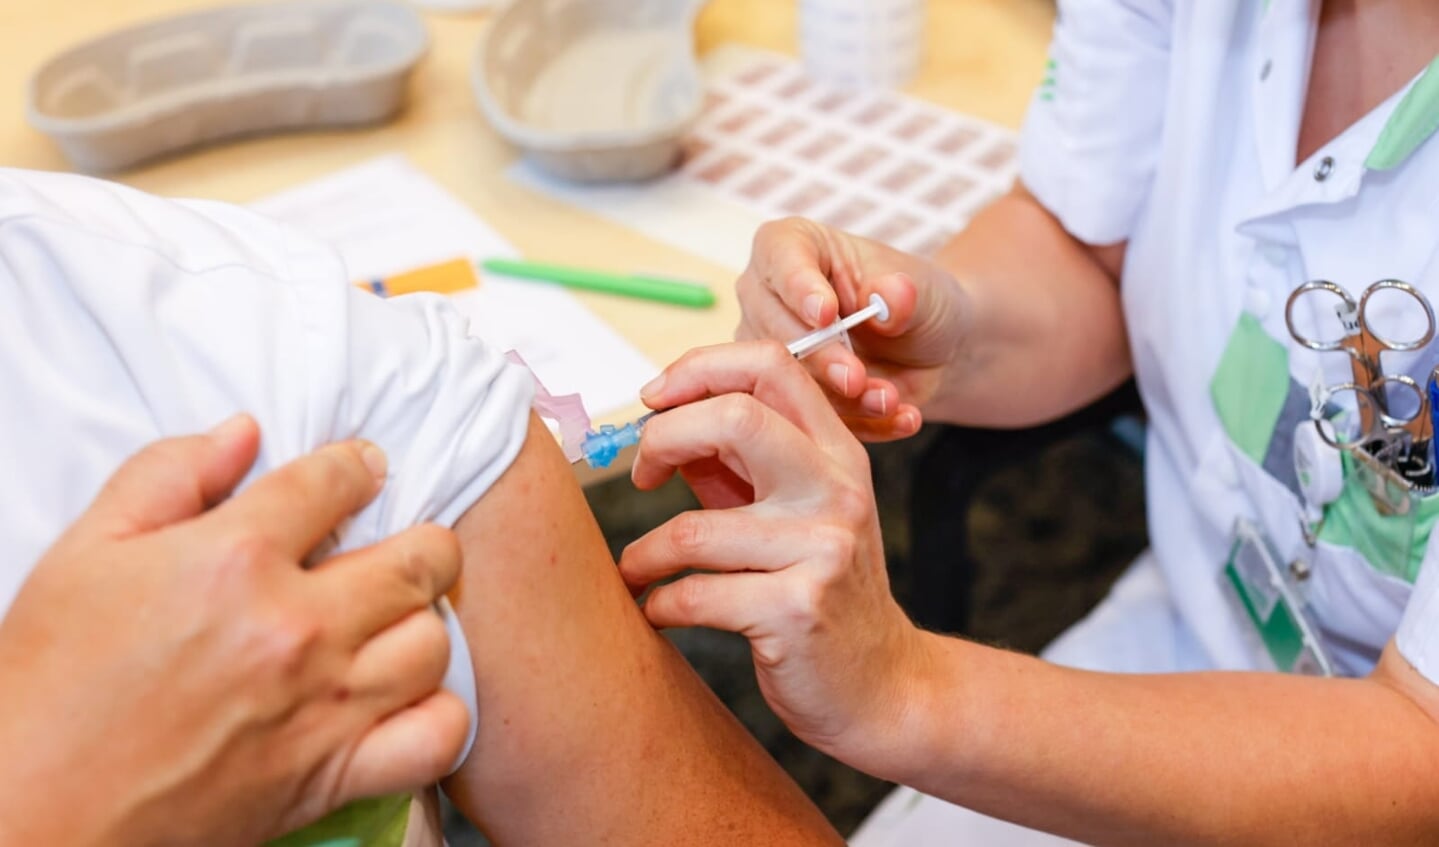 IC-specialist David Tjan wordt als eerste gevaccineerd in het Ziekenhuis Gelderse Vallei.